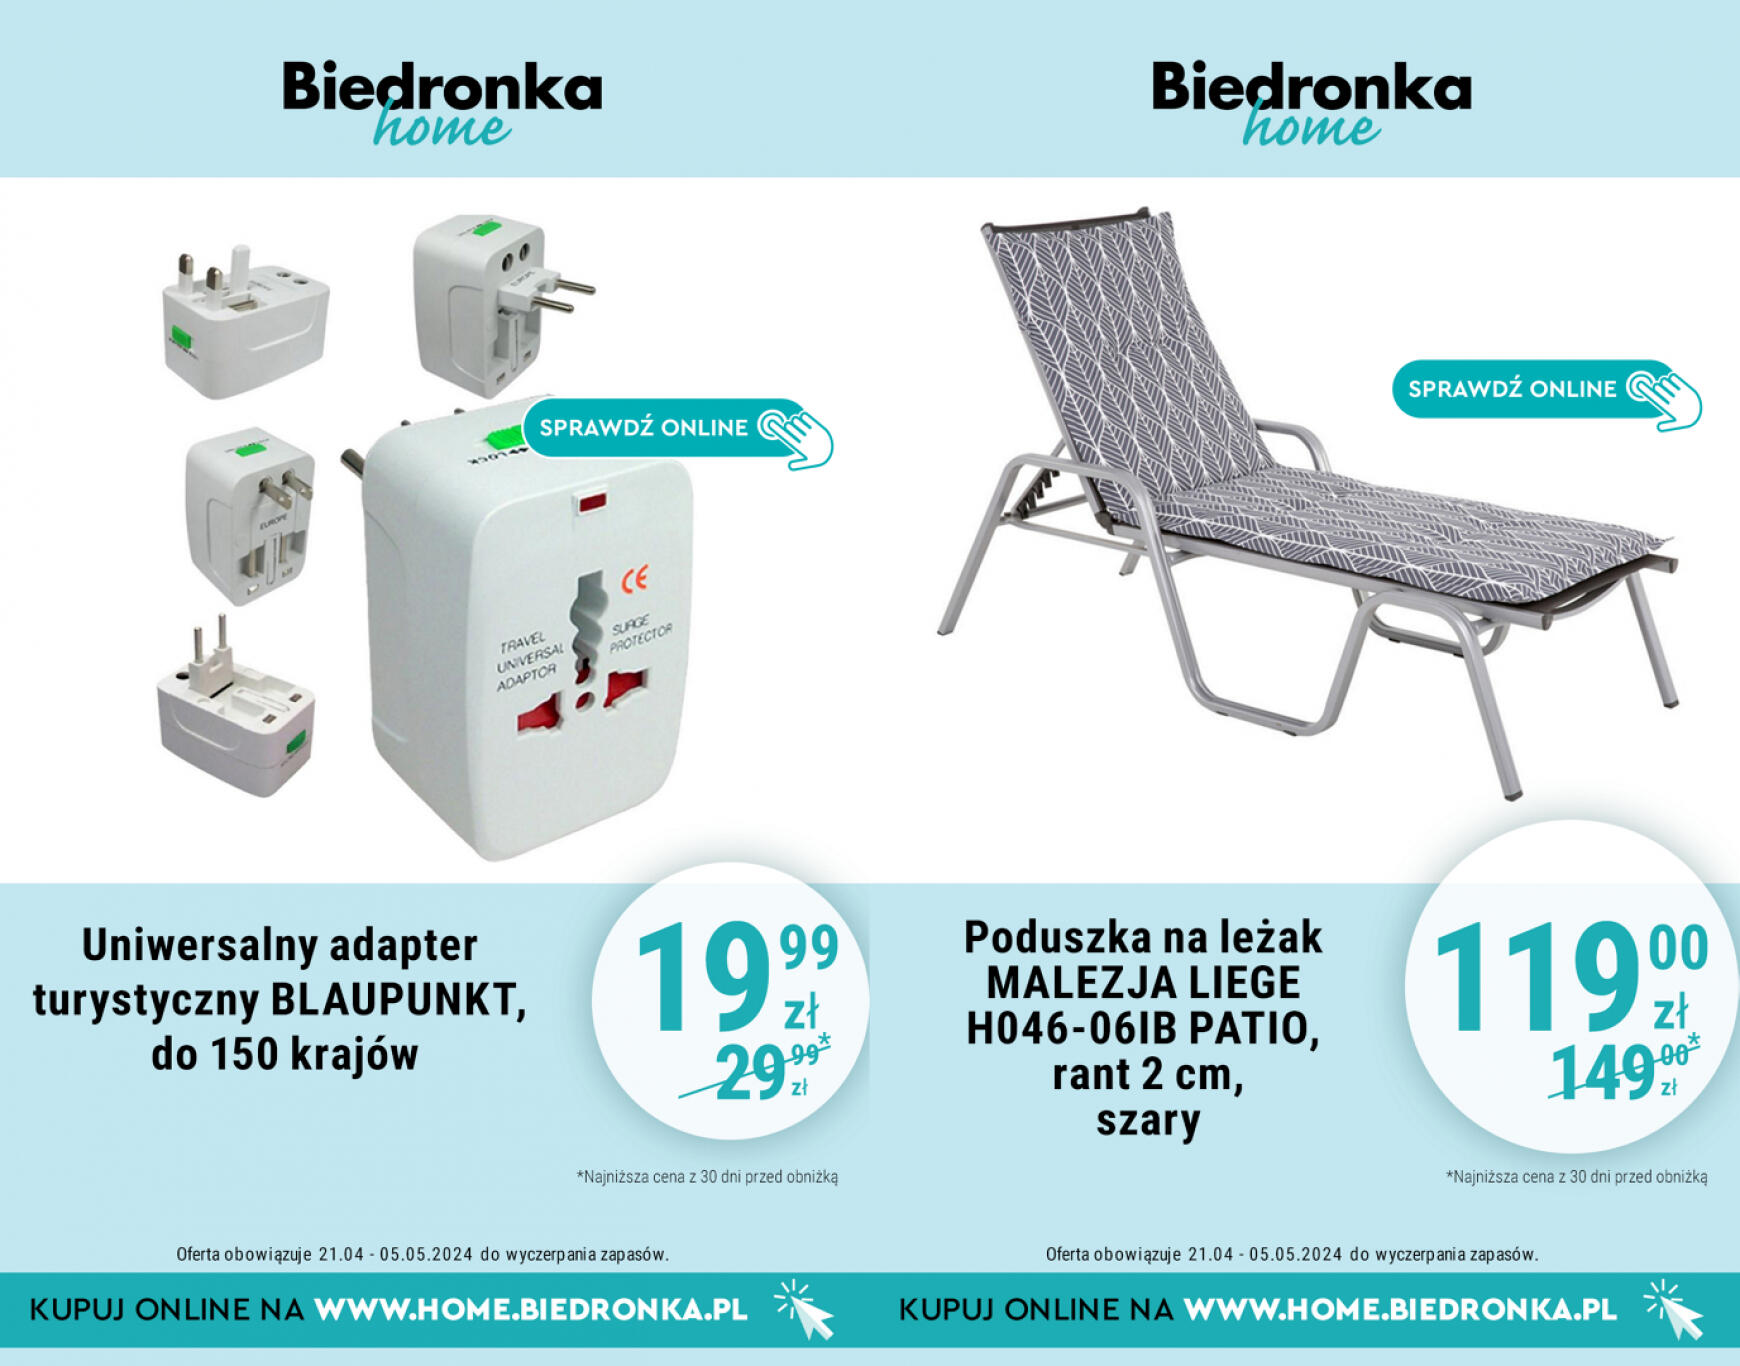 biedronka - Biedronka Home gazetka aktualna ważna od 21.04. - 12.05. - page: 3